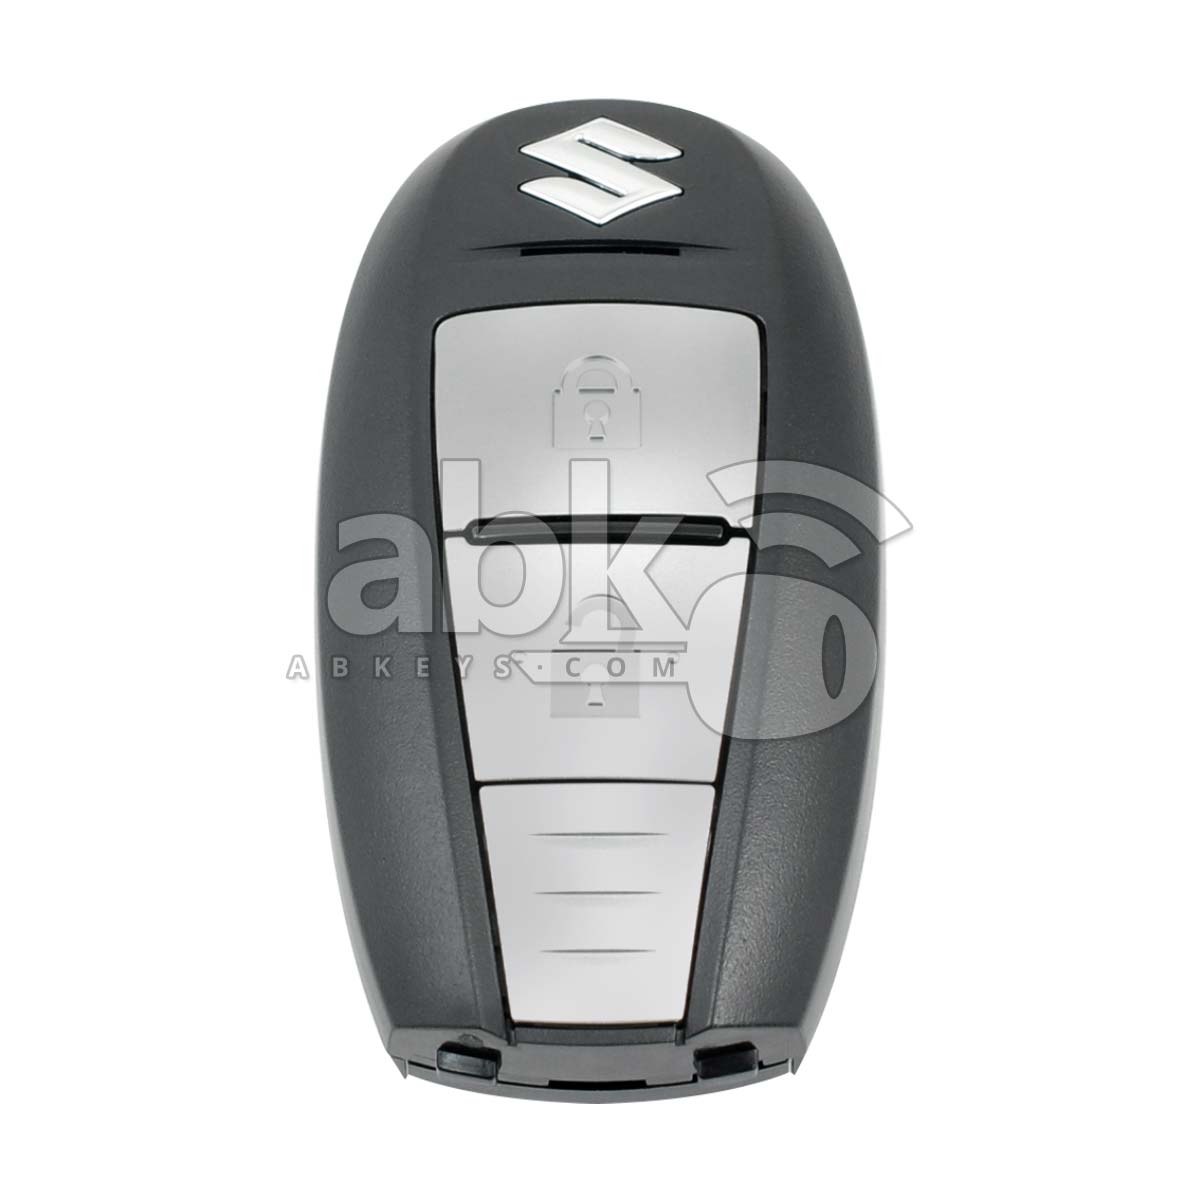 Genuine Suzuki Smart Key 2Buttons 37172-62R12 433MHz CWTR68P0 - ABK-1820 - ABKEYS.COM